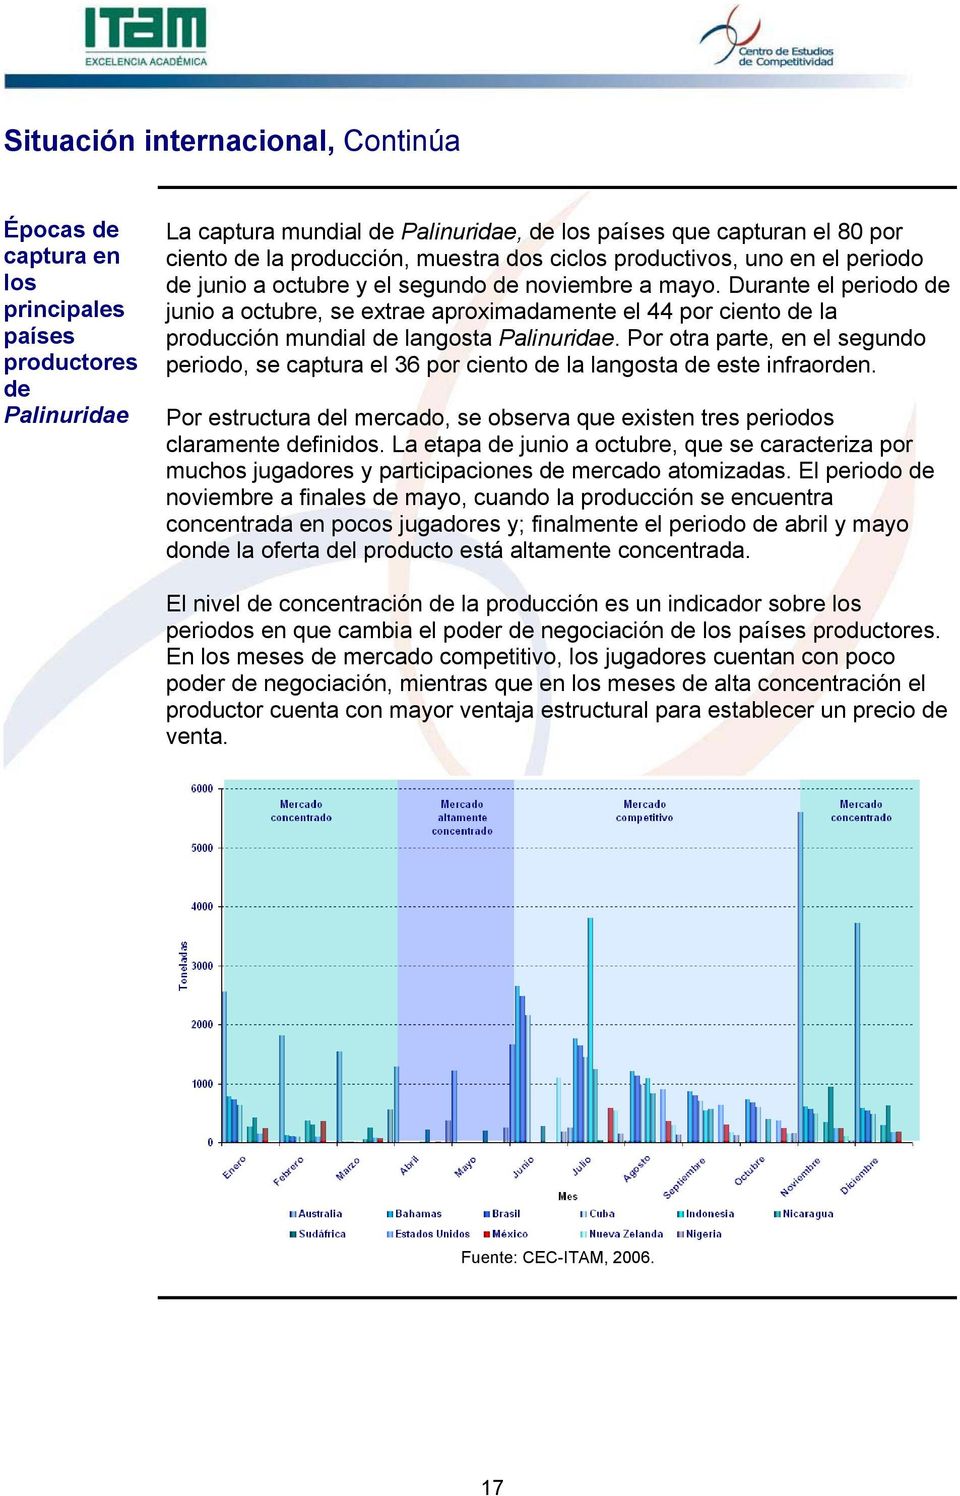 Durante el periodo de junio a octubre, se extrae aproximadamente el 44 por ciento de la producción mundial de langosta Palinuridae.